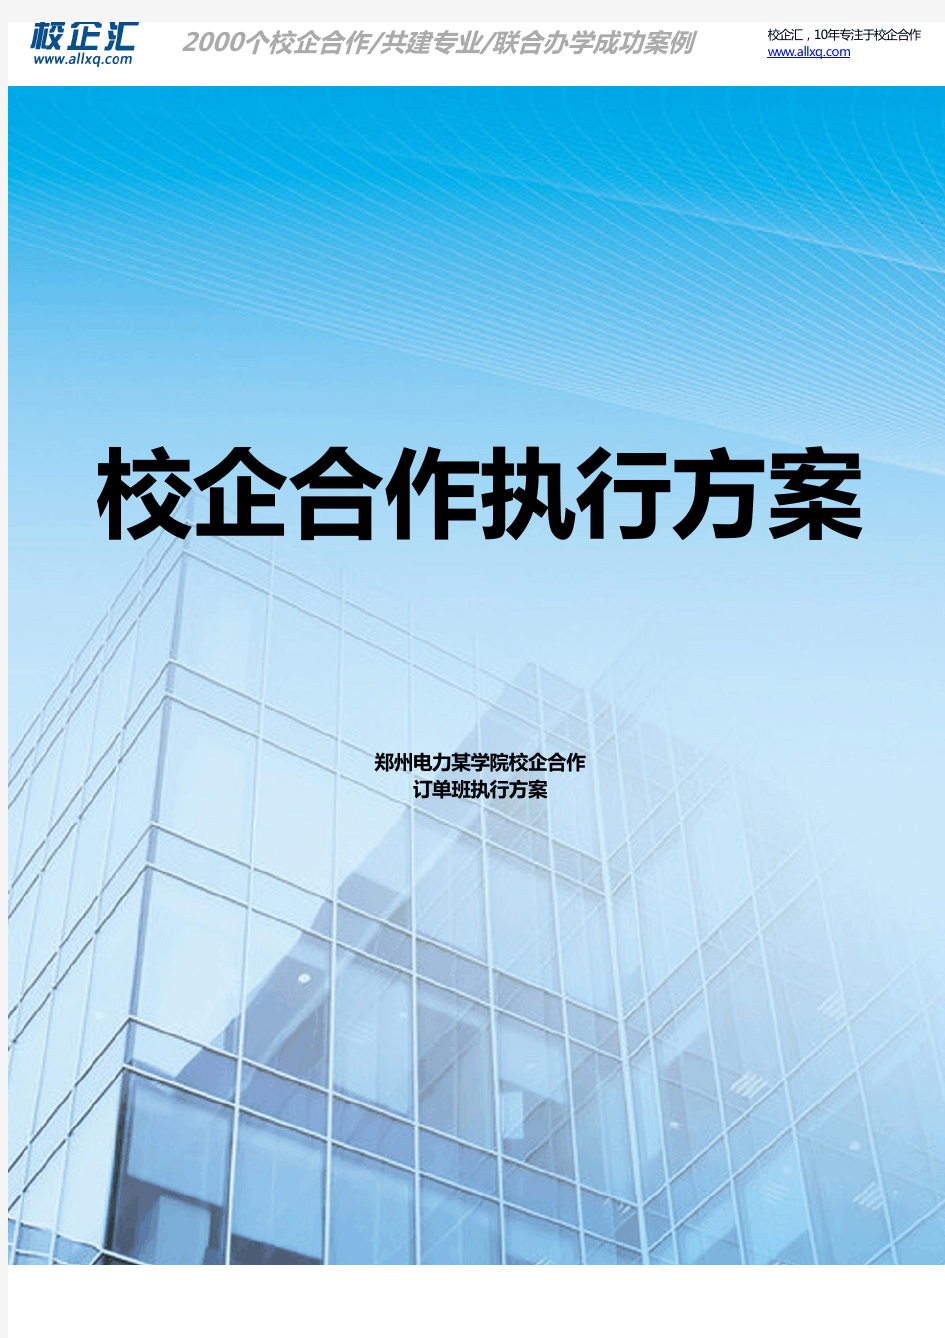 2016年郑州电力某学院校企合作物流管理订单班建设方案